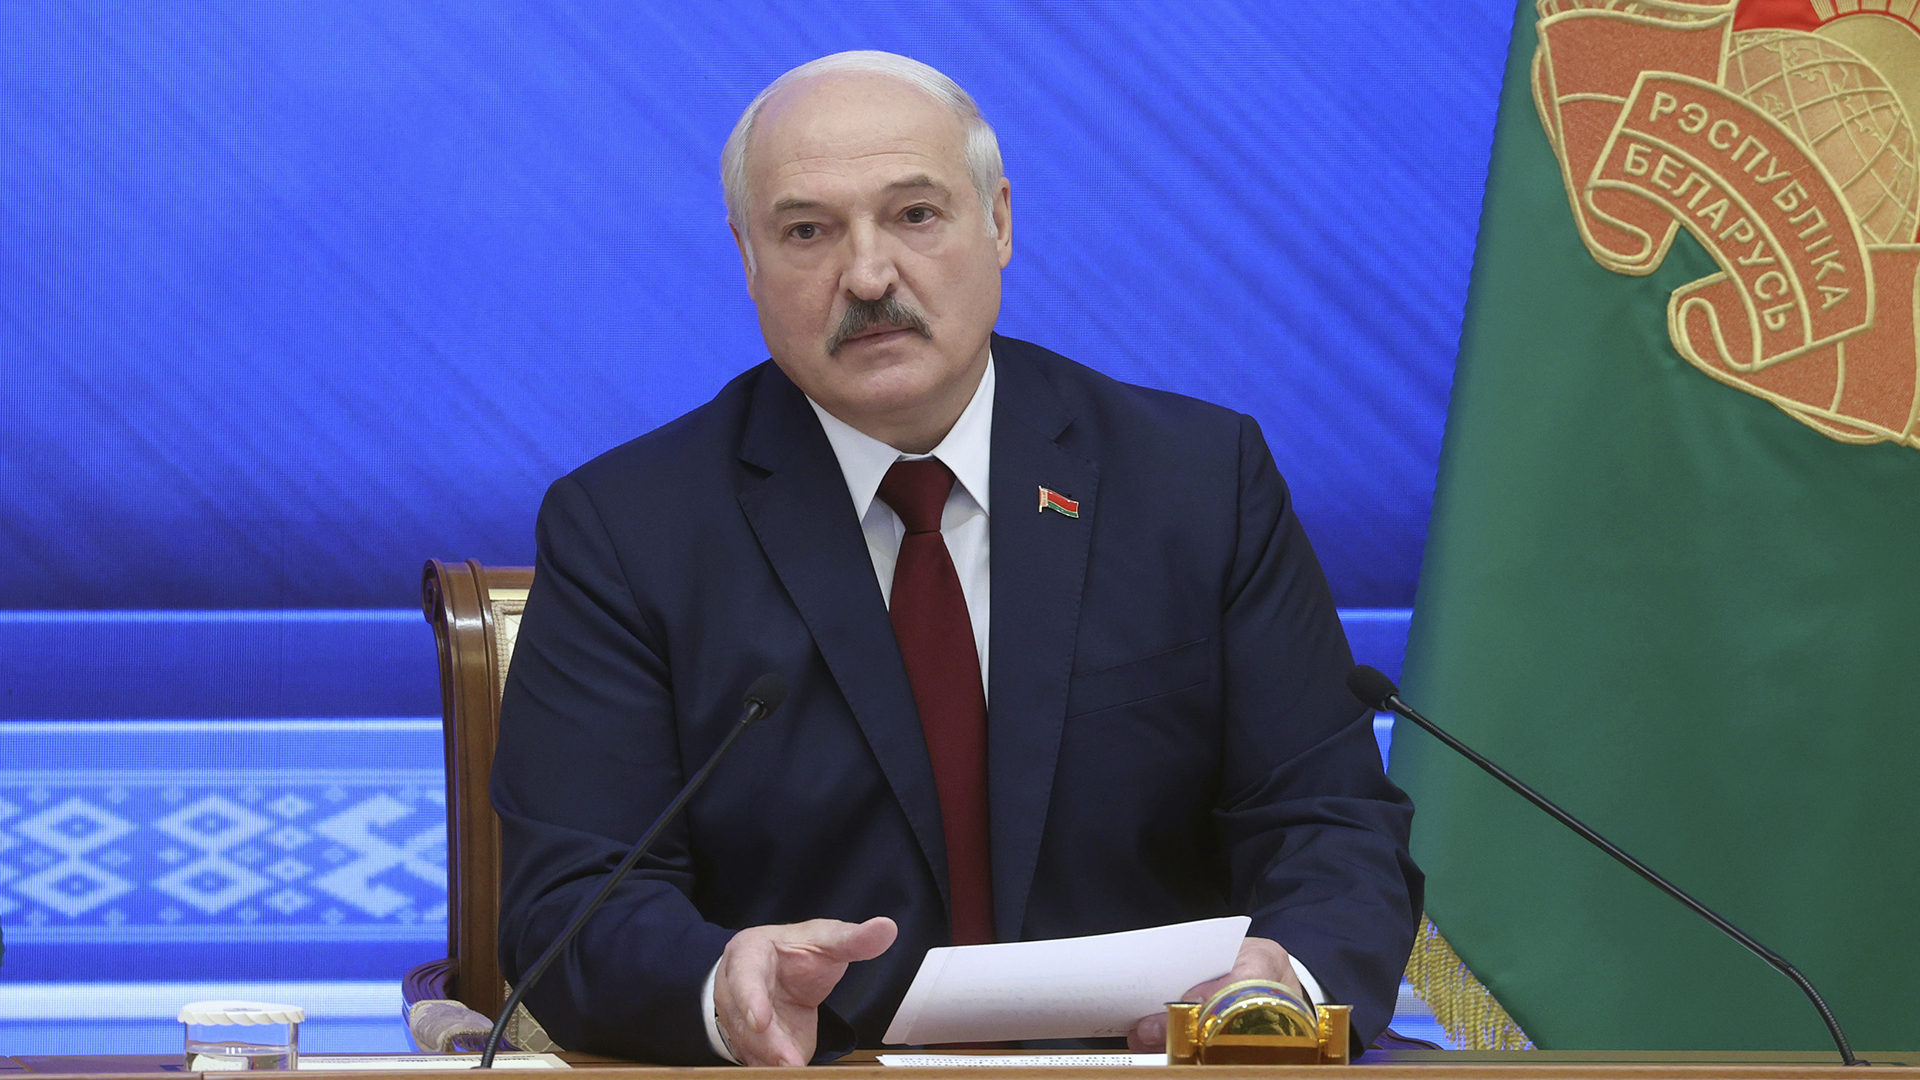 Alexander Lukaschenko spricht während einer Pressekonferenz.